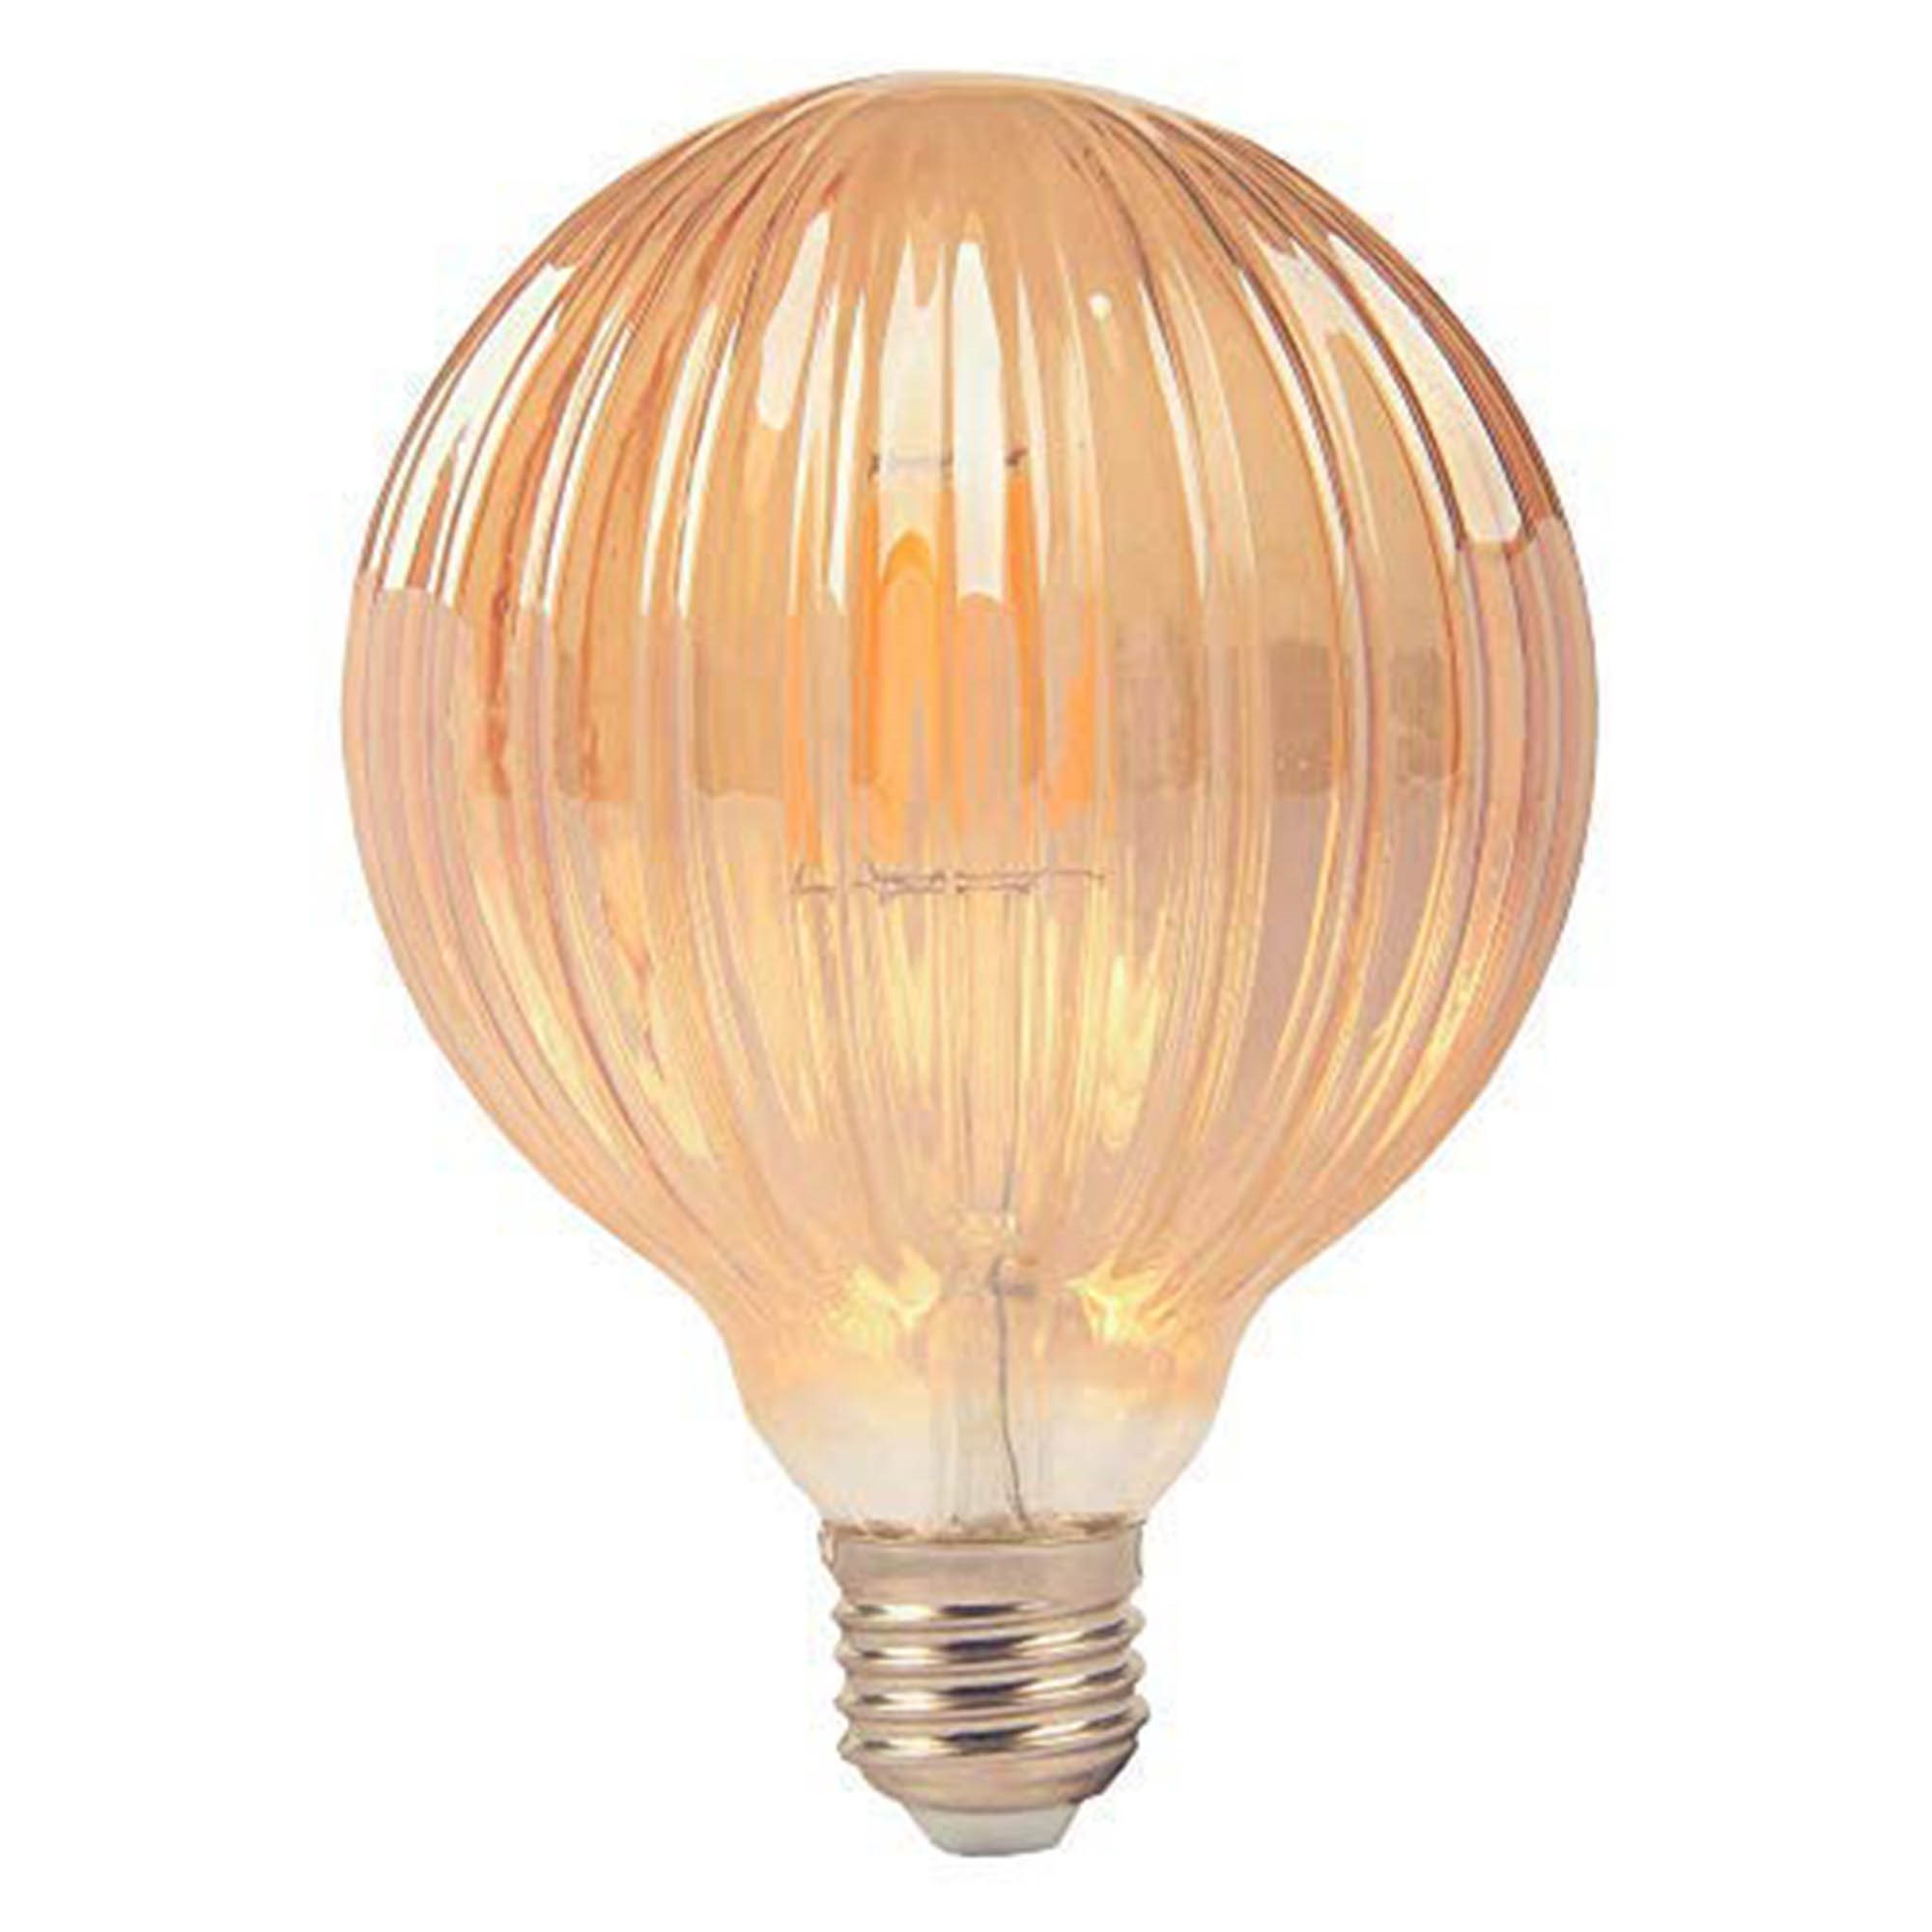 Løve Sæt ud Ambitiøs KRYSTAL 4W dekorativ globe 95 i rillet vintage design - Filament LED-pære  360-400 lumen